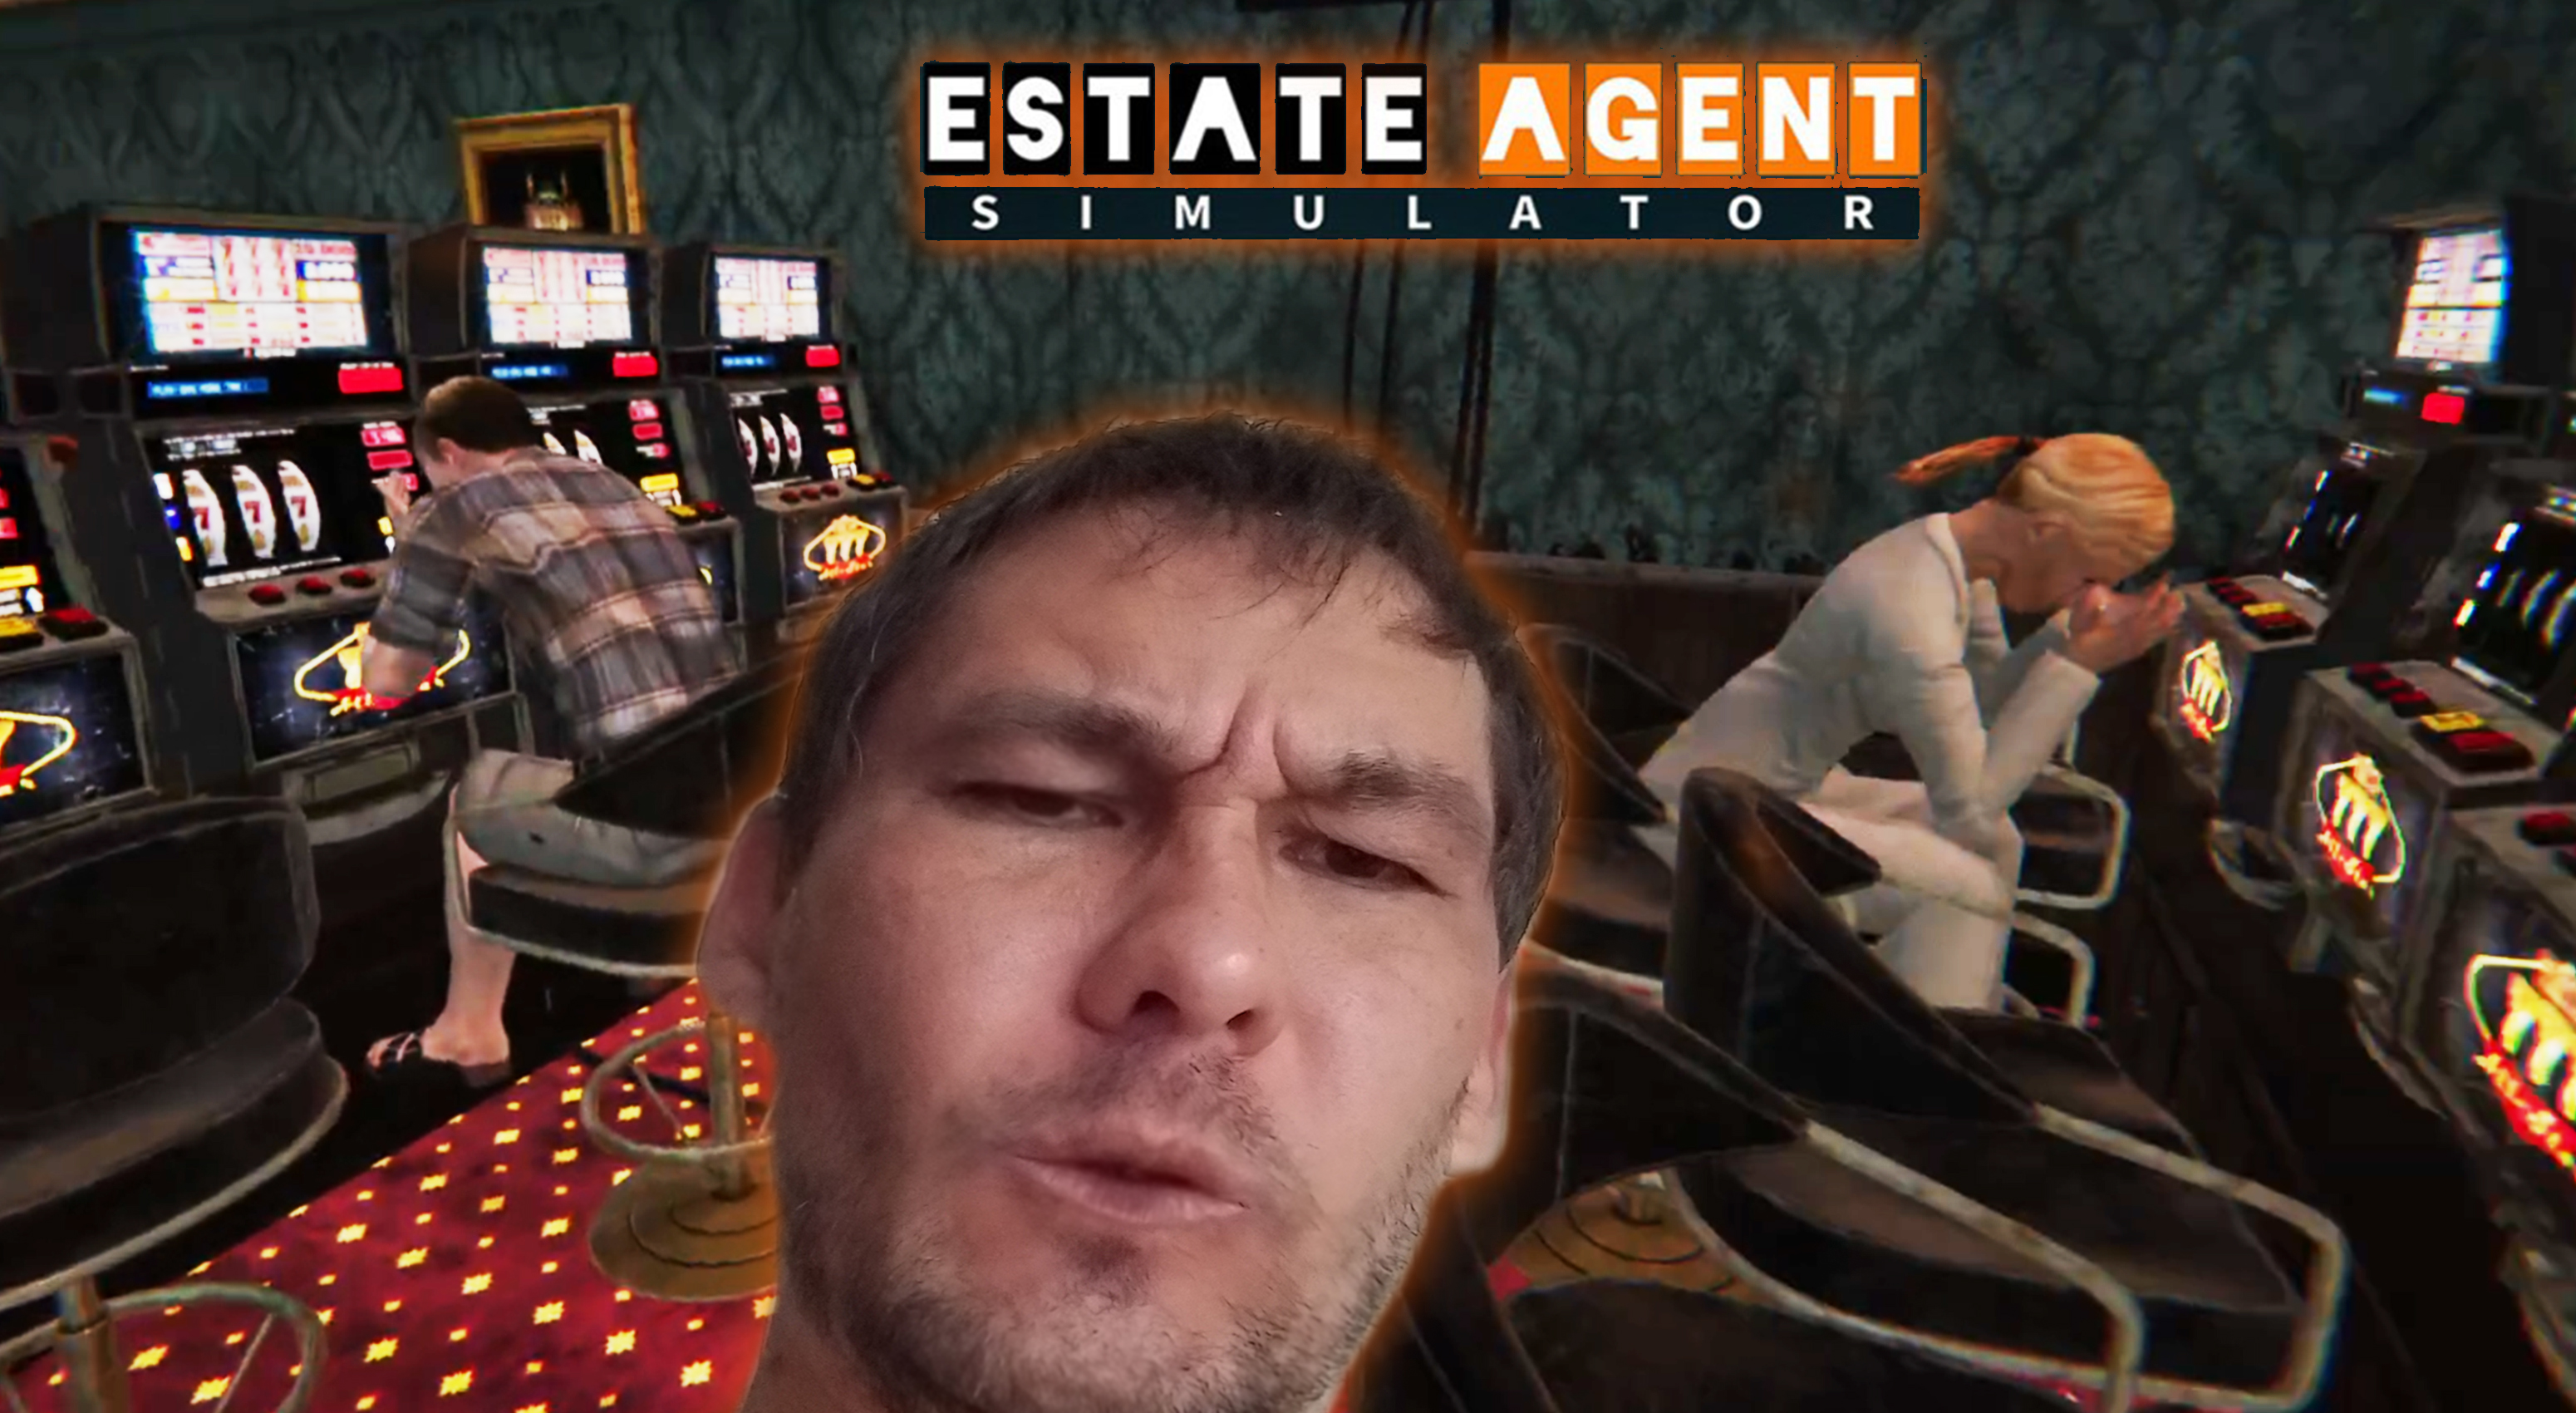 ЗДЕСЬ ЛЮДИ СТРАДАЮТ ◈ Estate Agent Simulator #2